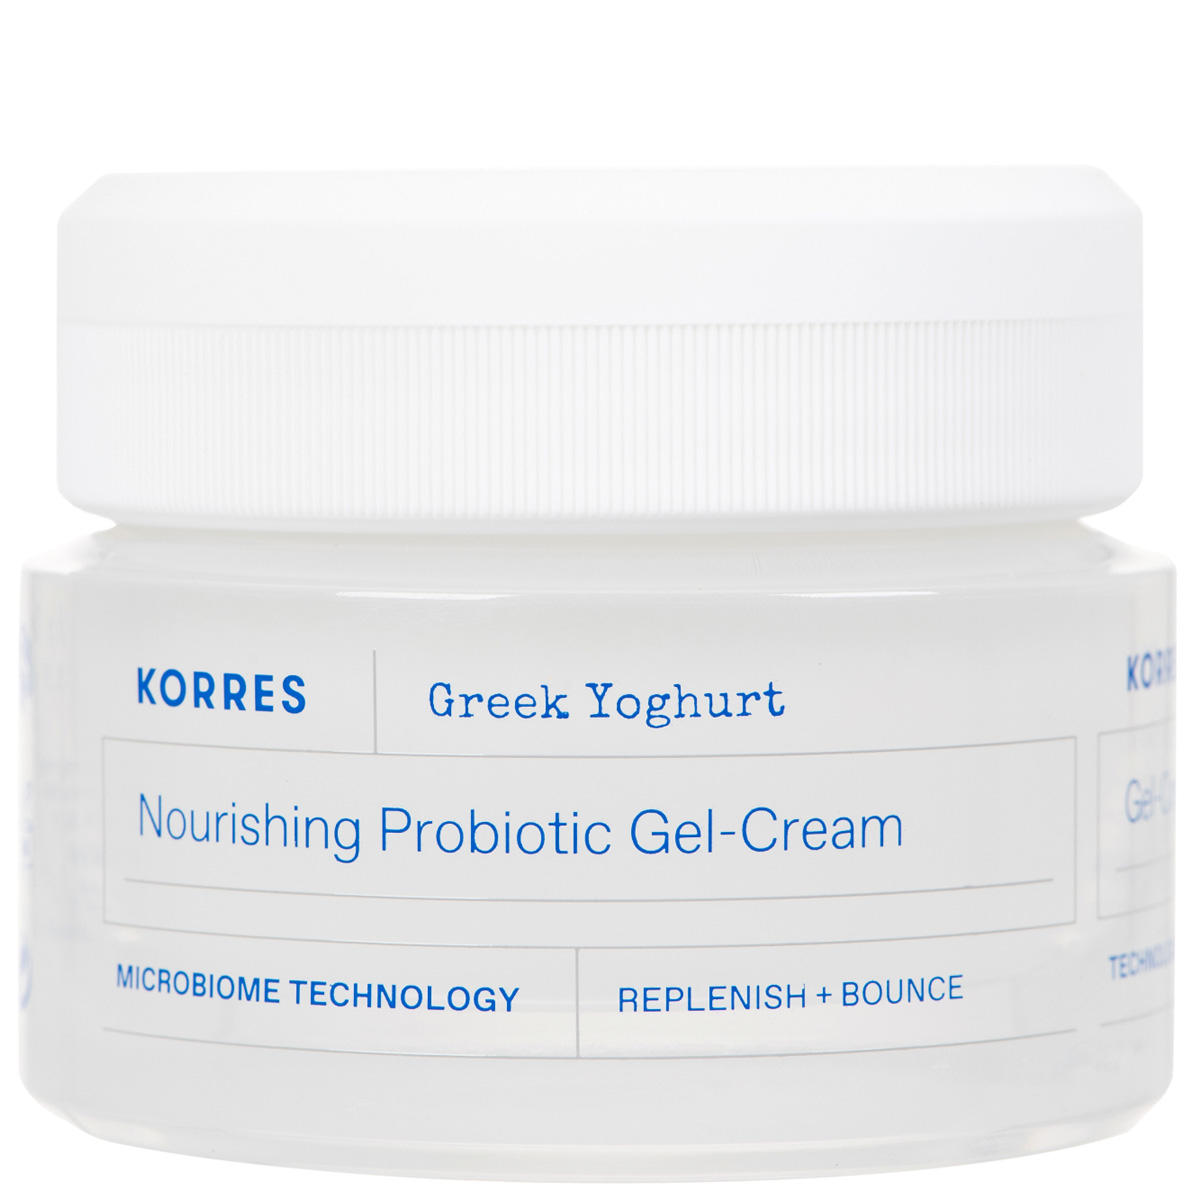 KORRES Greek Yoghurt Nourishing Probiotic Gel-Cream 40 ml - 1